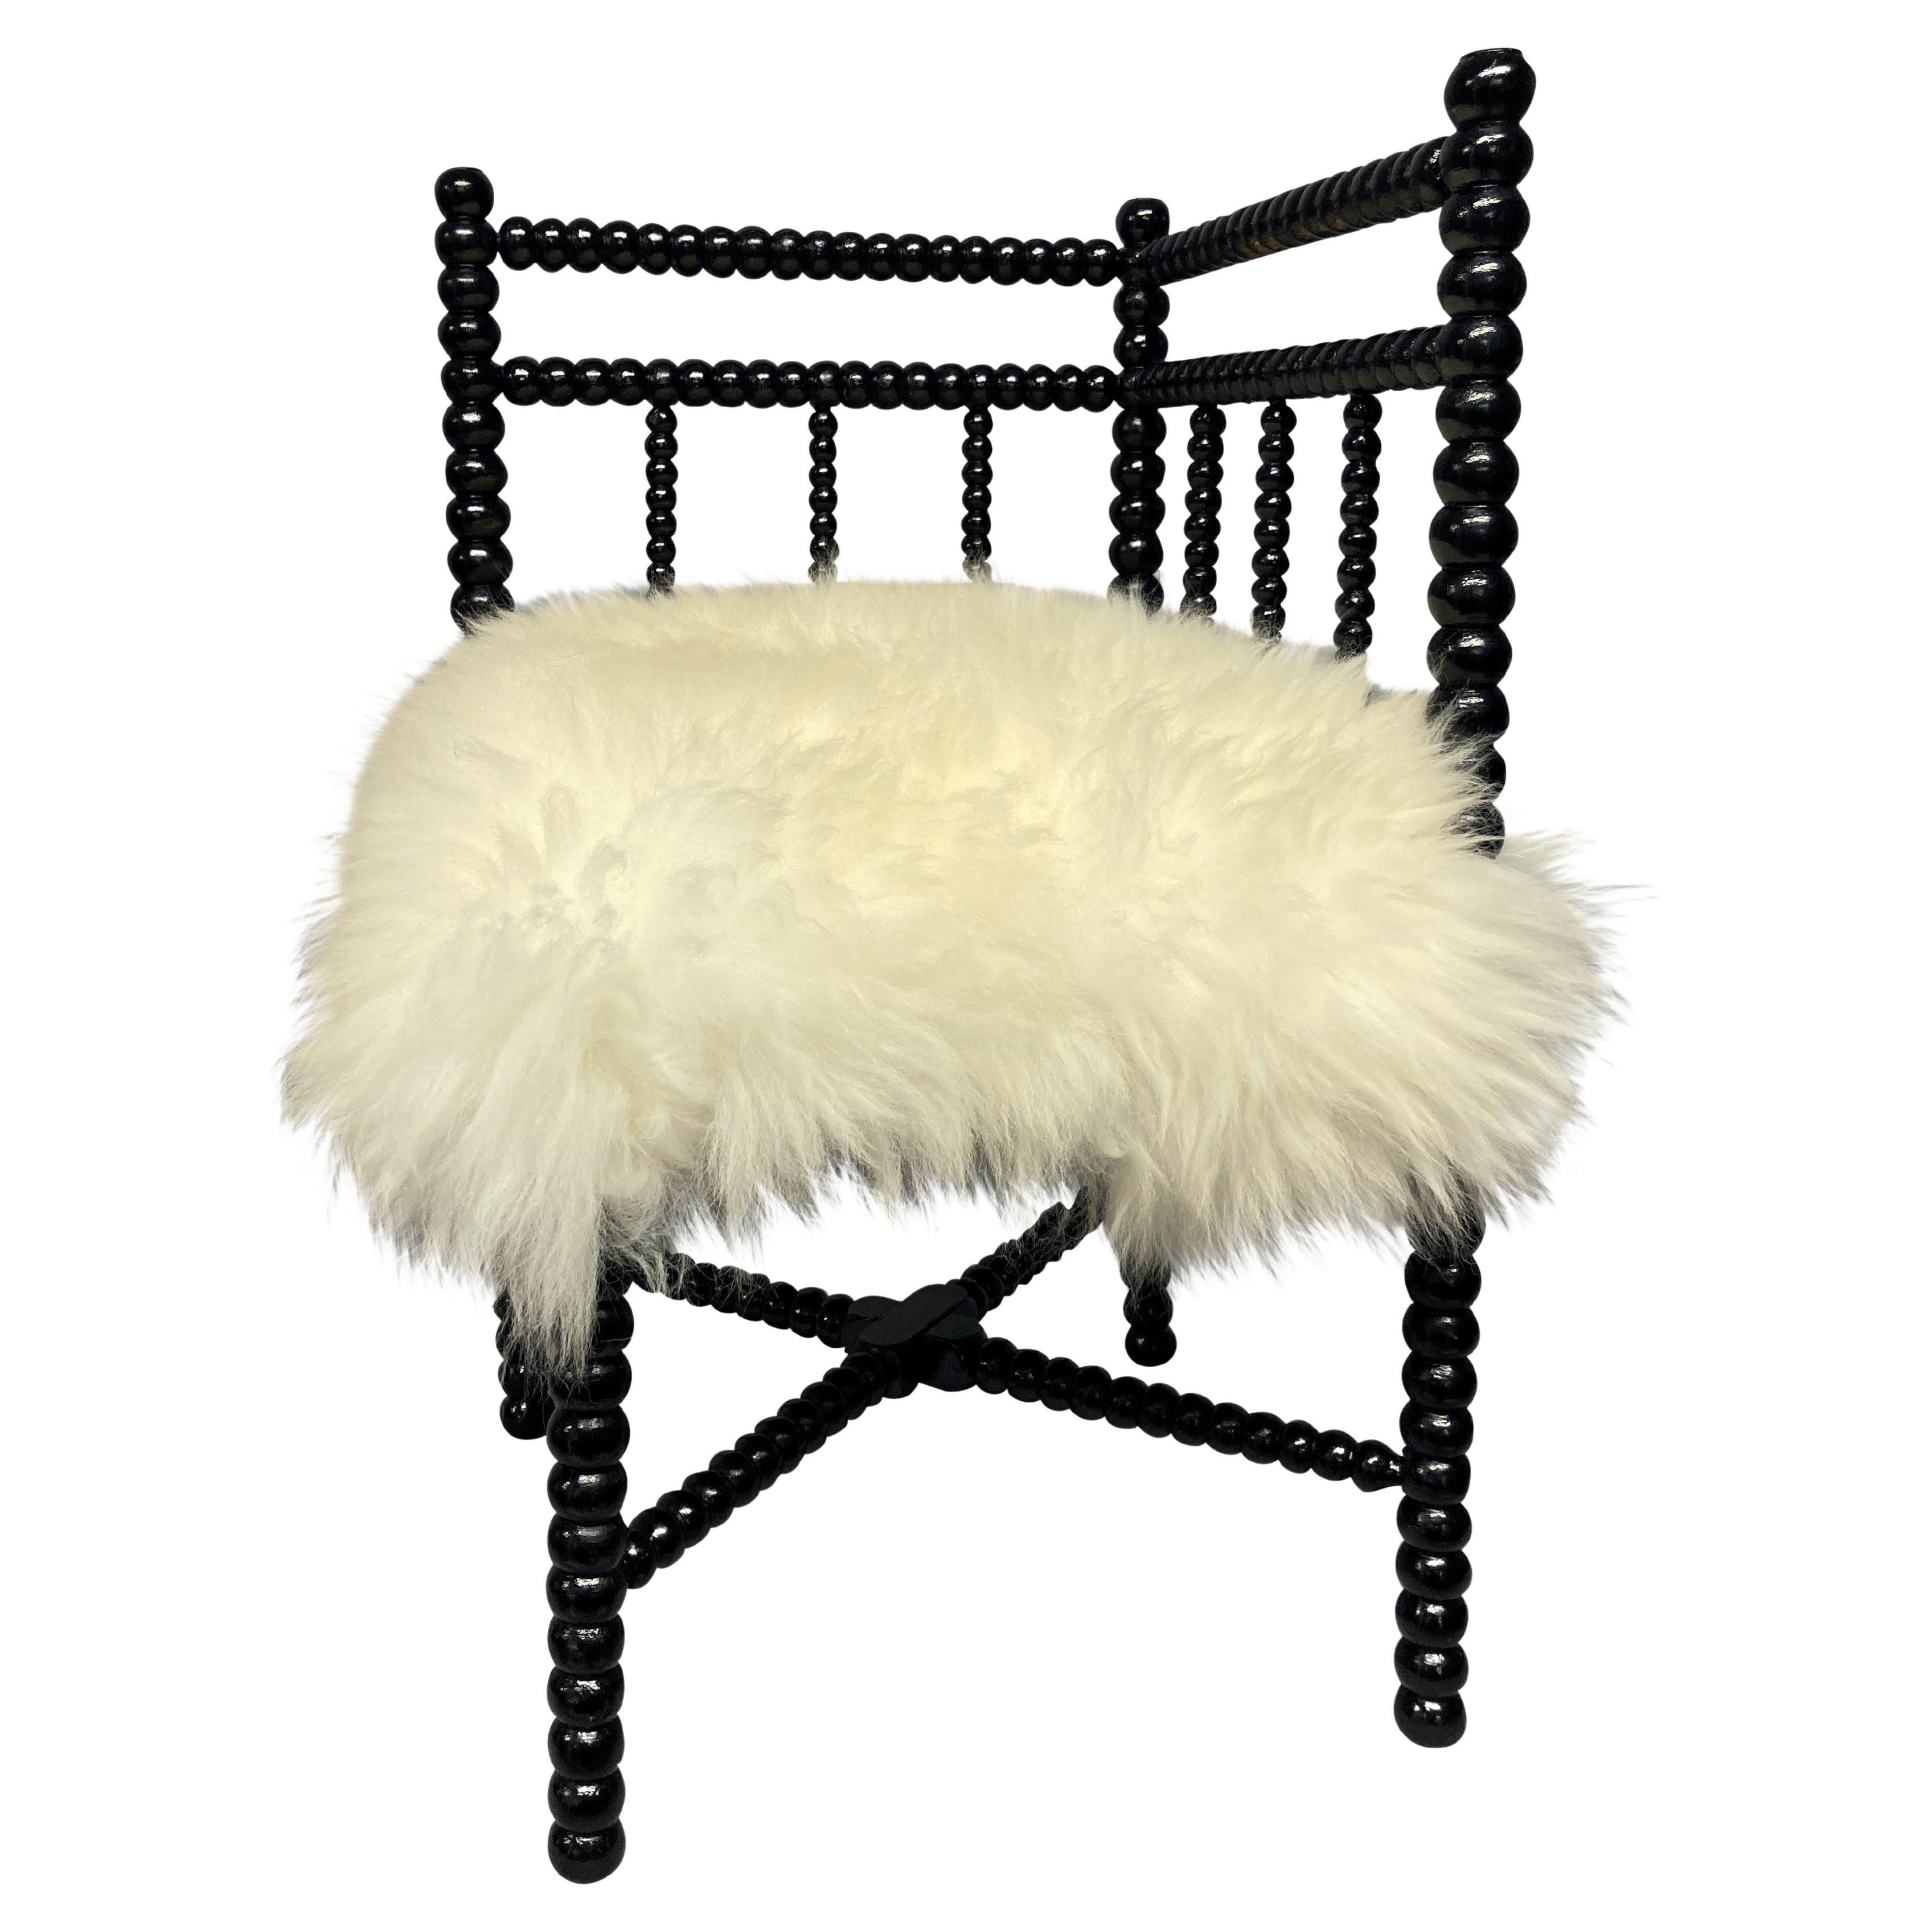 Petite Black Lacquered Corner Bobbin Chair